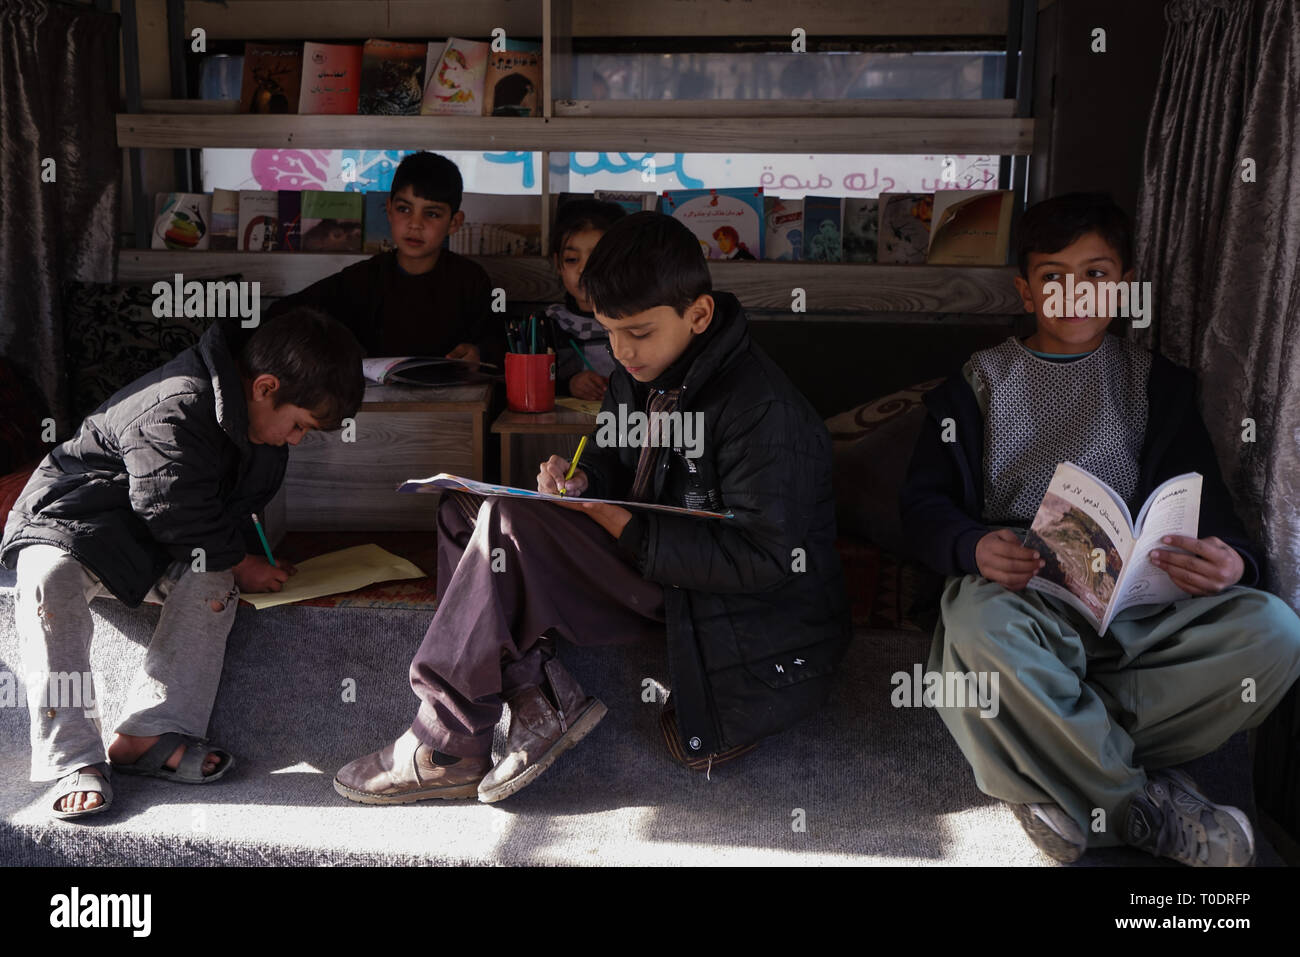 Kabul la biblioteca mobile - La Charmaghaz (noce) Progetto che esegue questa libreria mobile, iniziato nel febbraio dello scorso anno e ben presto divenne un regolare vista attorno alla città. Ogni giorno, il bus visite fino a quattro comunità in tutta Kabul, con ogni arresto della durata di due ore. "L'obiettivo principale della biblioteca mobile è quello di promuovere il pensiero critico, che crediamo non sia promosso nel nostro sistema di istruzione o la nostra società", ha detto Freshta Karim, il 26-anno-vecchio fondatore del progetto Charmaghaz. Foto Stock